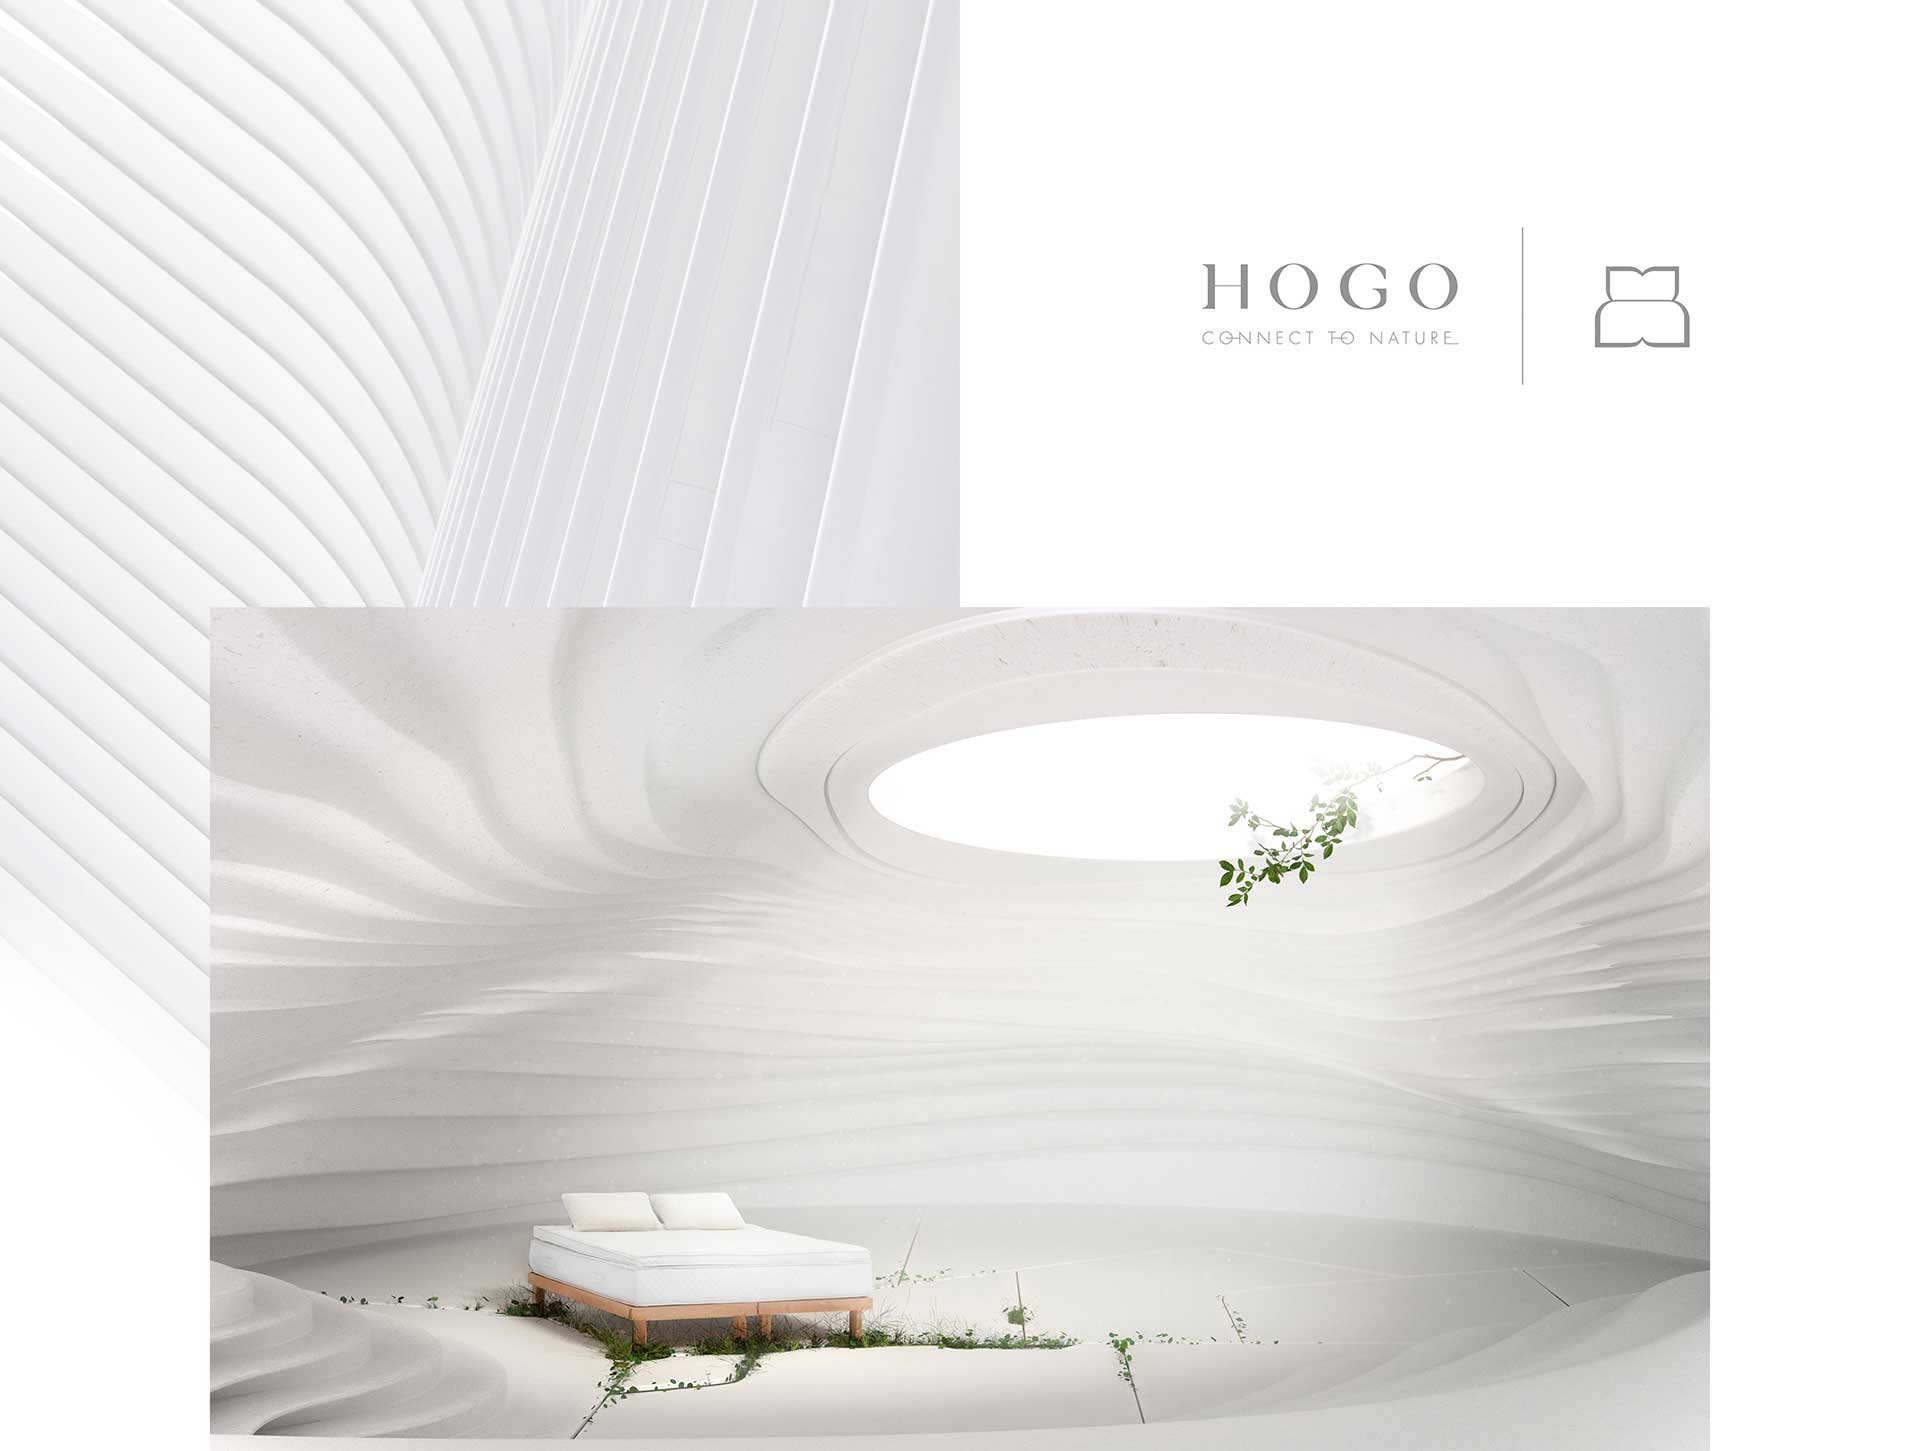 Logotipo HOGO eleyuve